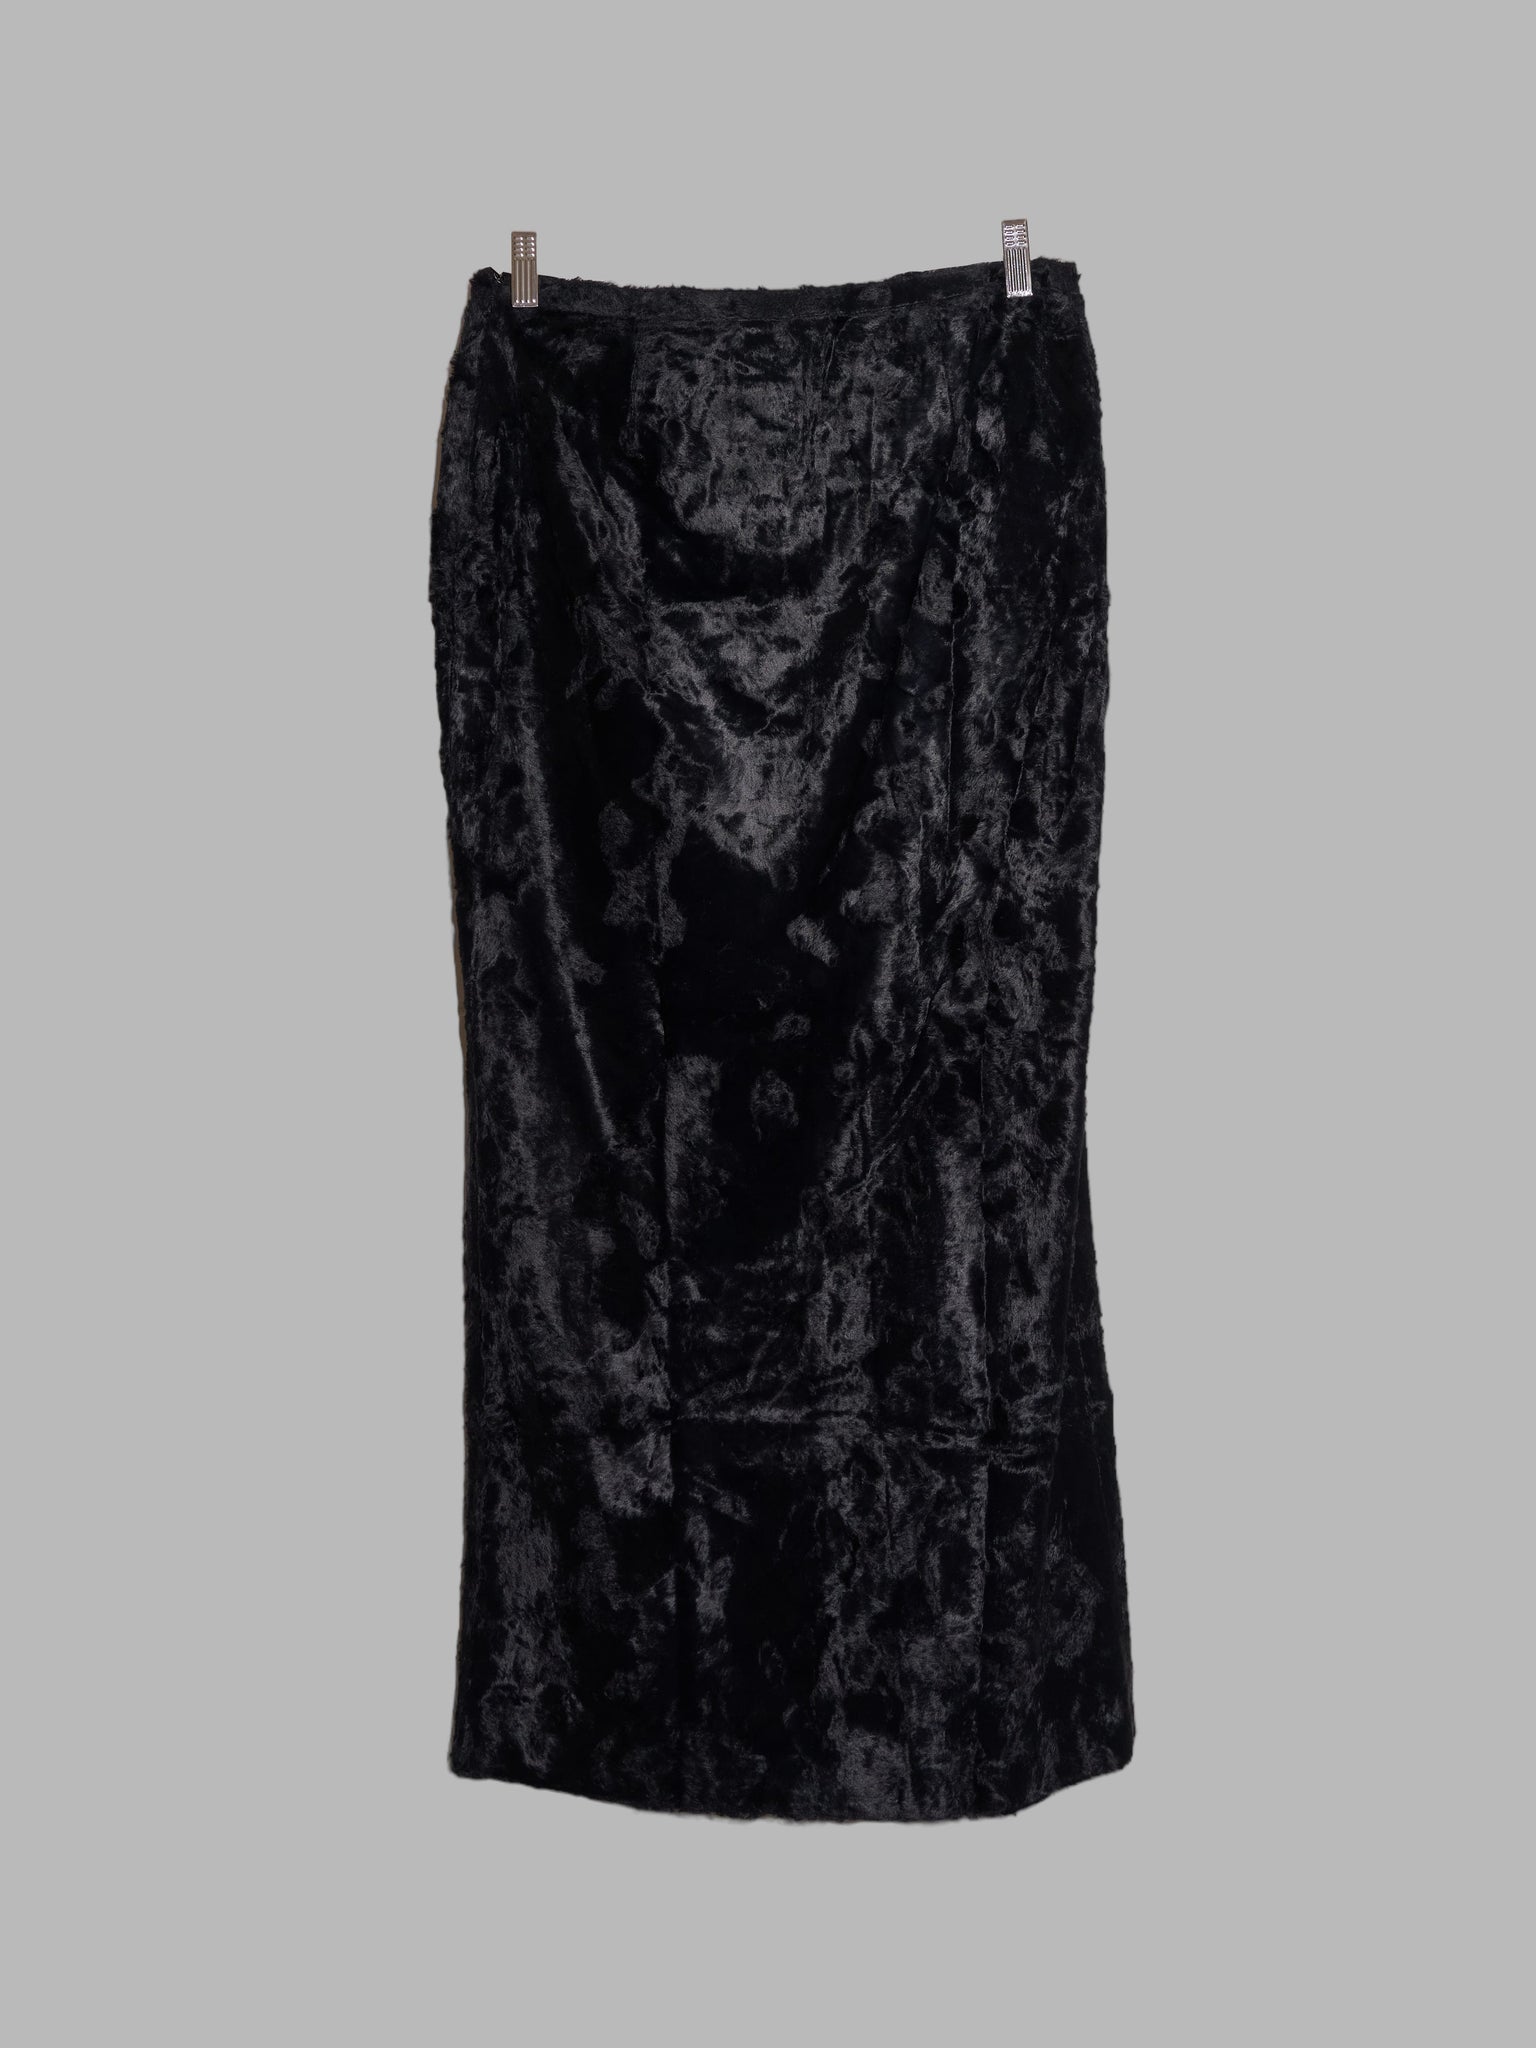 Jean Colonna 1990s long black faux fur front split skirt